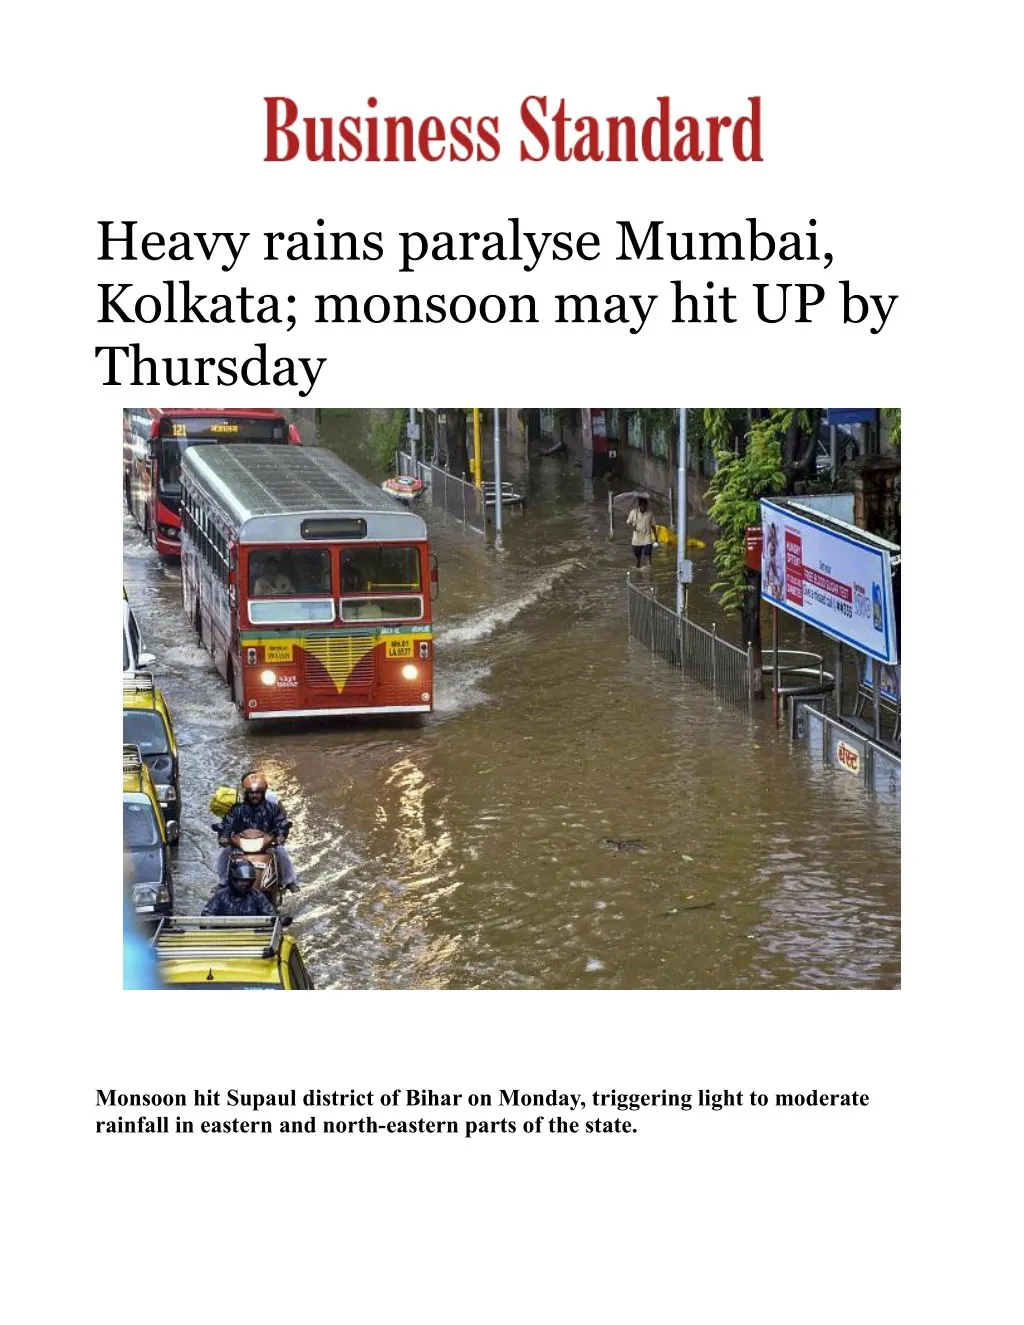 heavy rains paralyse mumbai kolkata monsoon